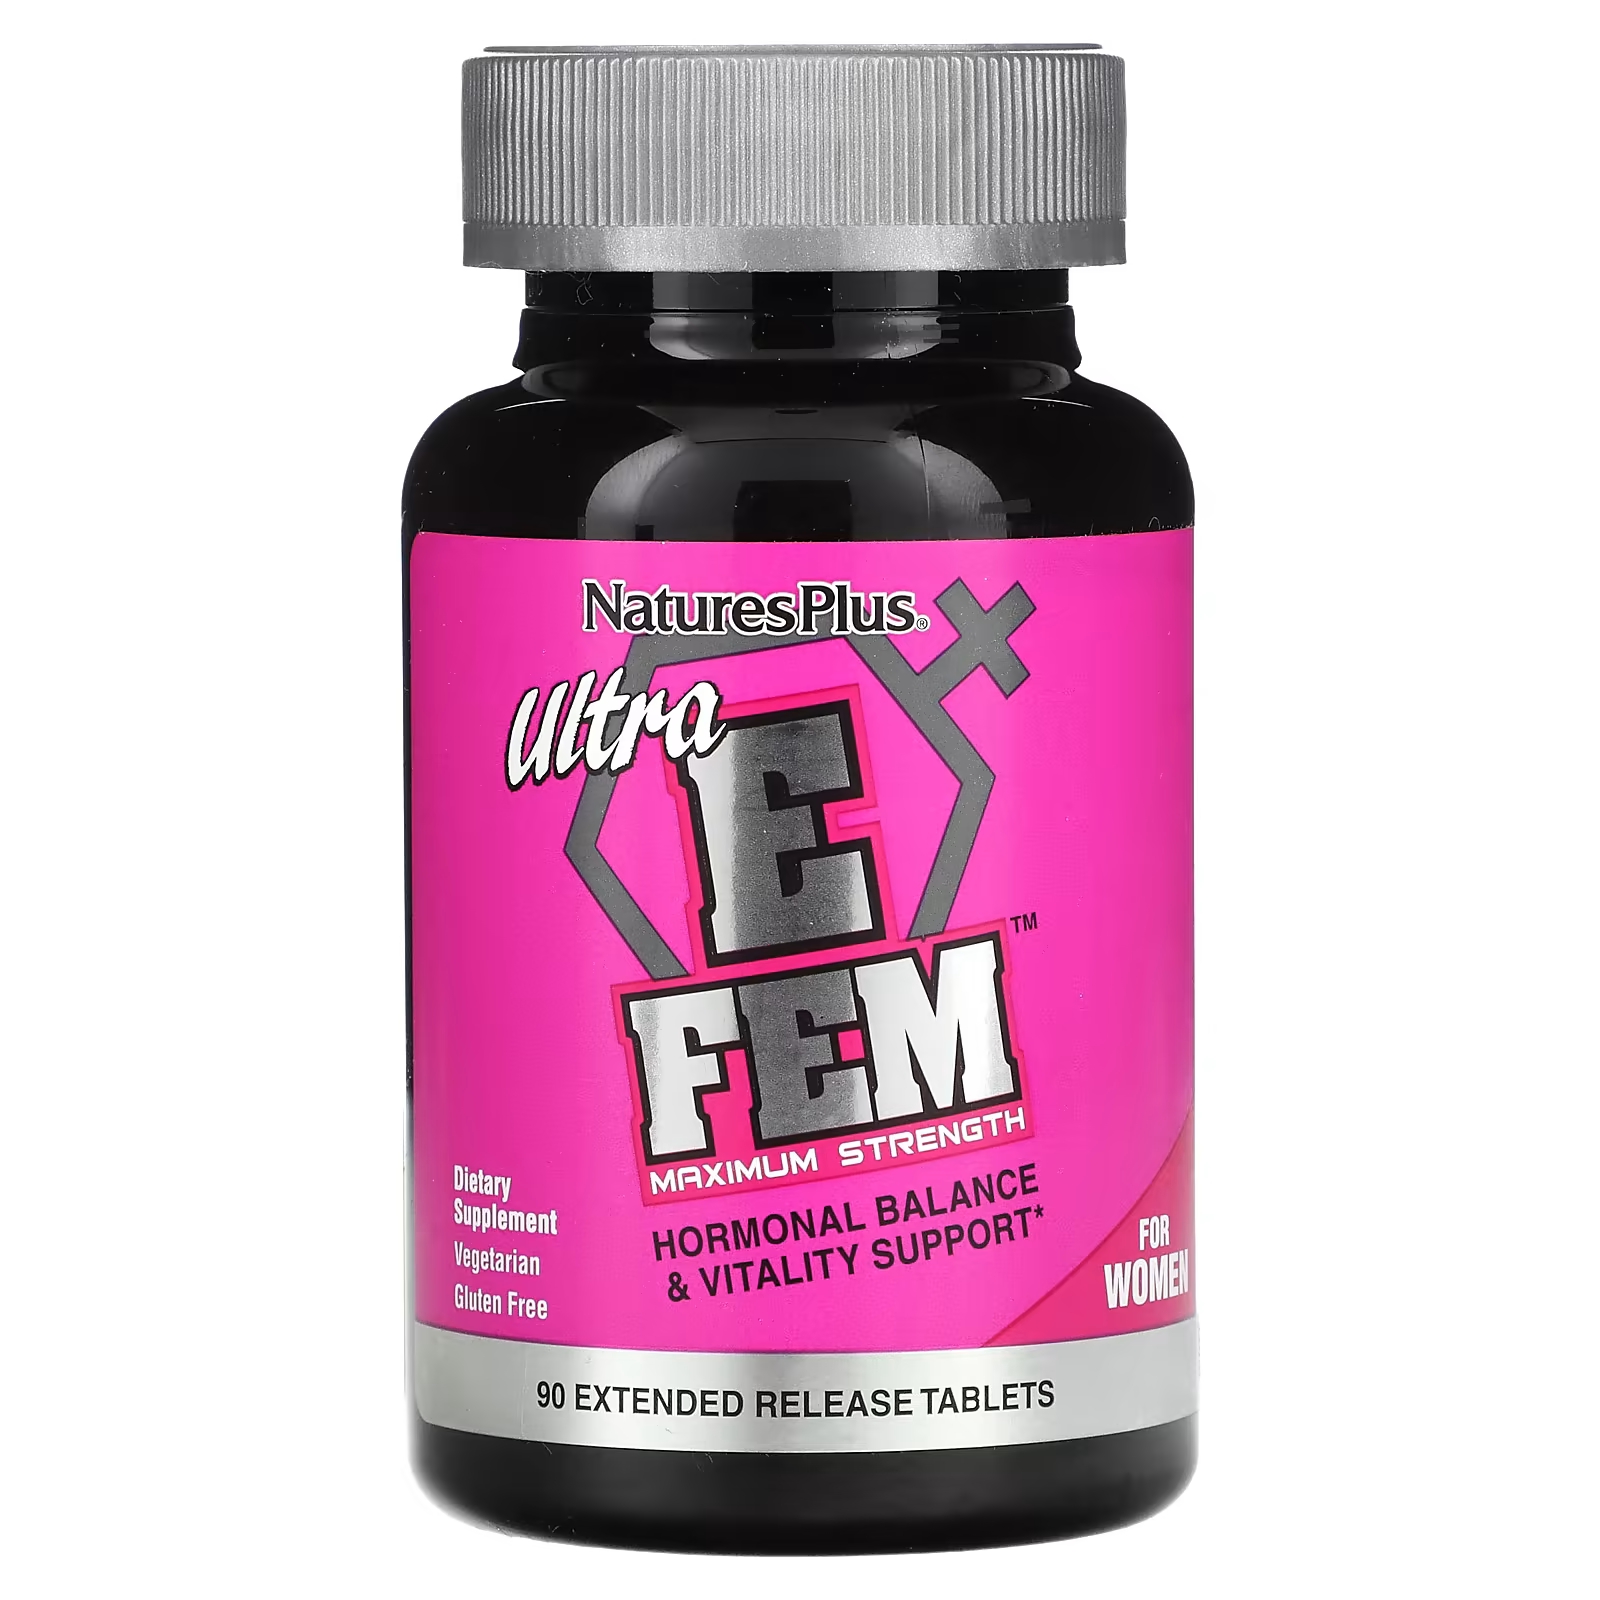 Пищевая добавка NaturesPlus Ultra E Fem для женщин, 90 таблеток naturesplus ultra e fem для женщин максимальная сила 90 таблеток пролонгированного действия